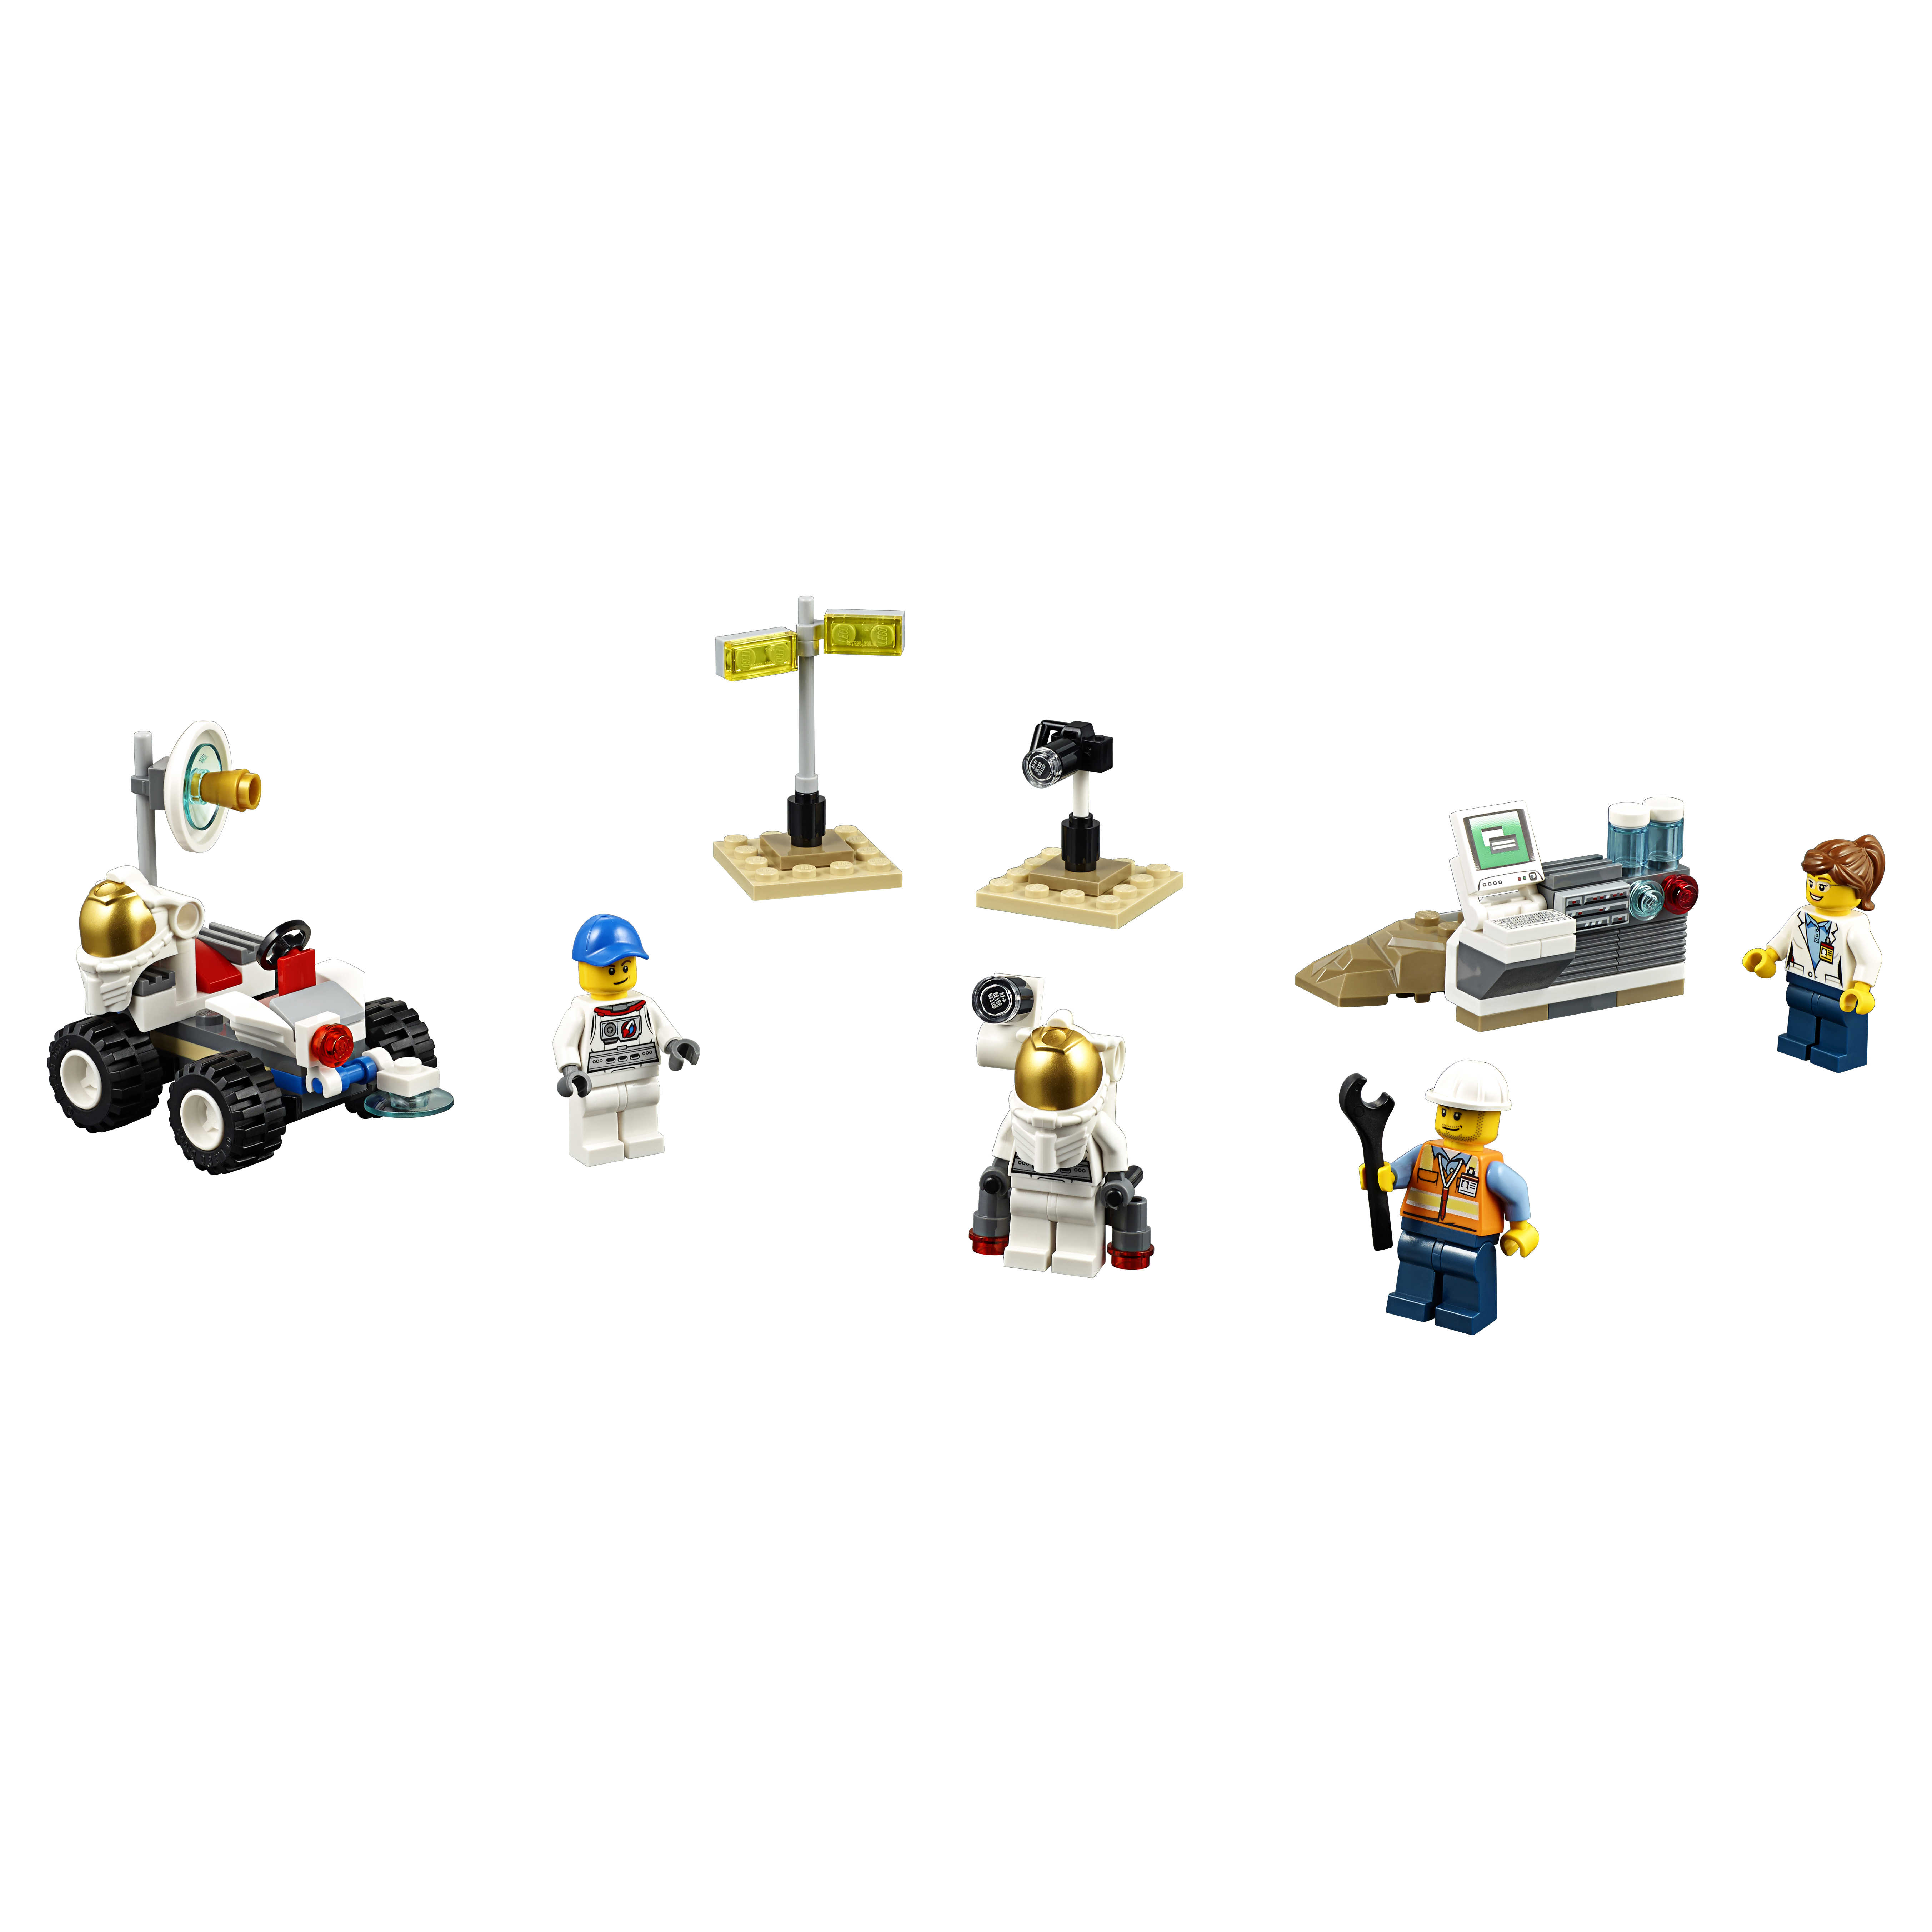 Конструктор LEGO City Space Port Набор для начинающих Космос (60077) конструктор космос